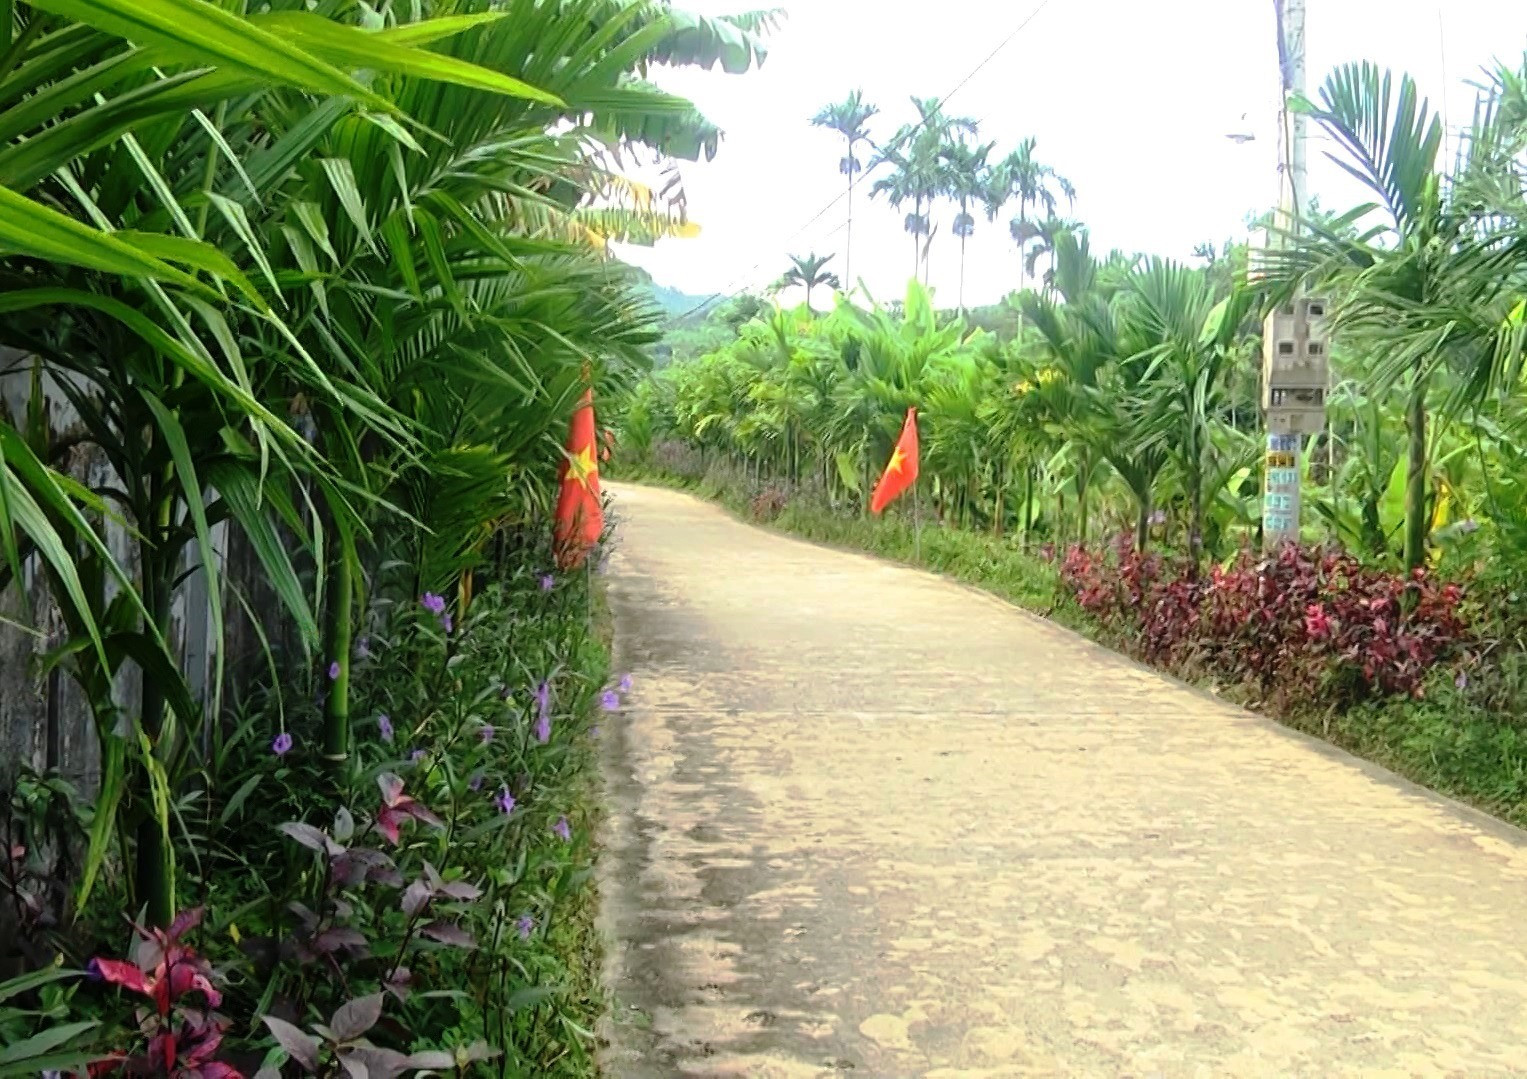 Tuyến đường hoa, cây xanh ở thôn An Long (xã Quế Phong) luôn giữ được vẻ sạch đẹp. ảnh DT